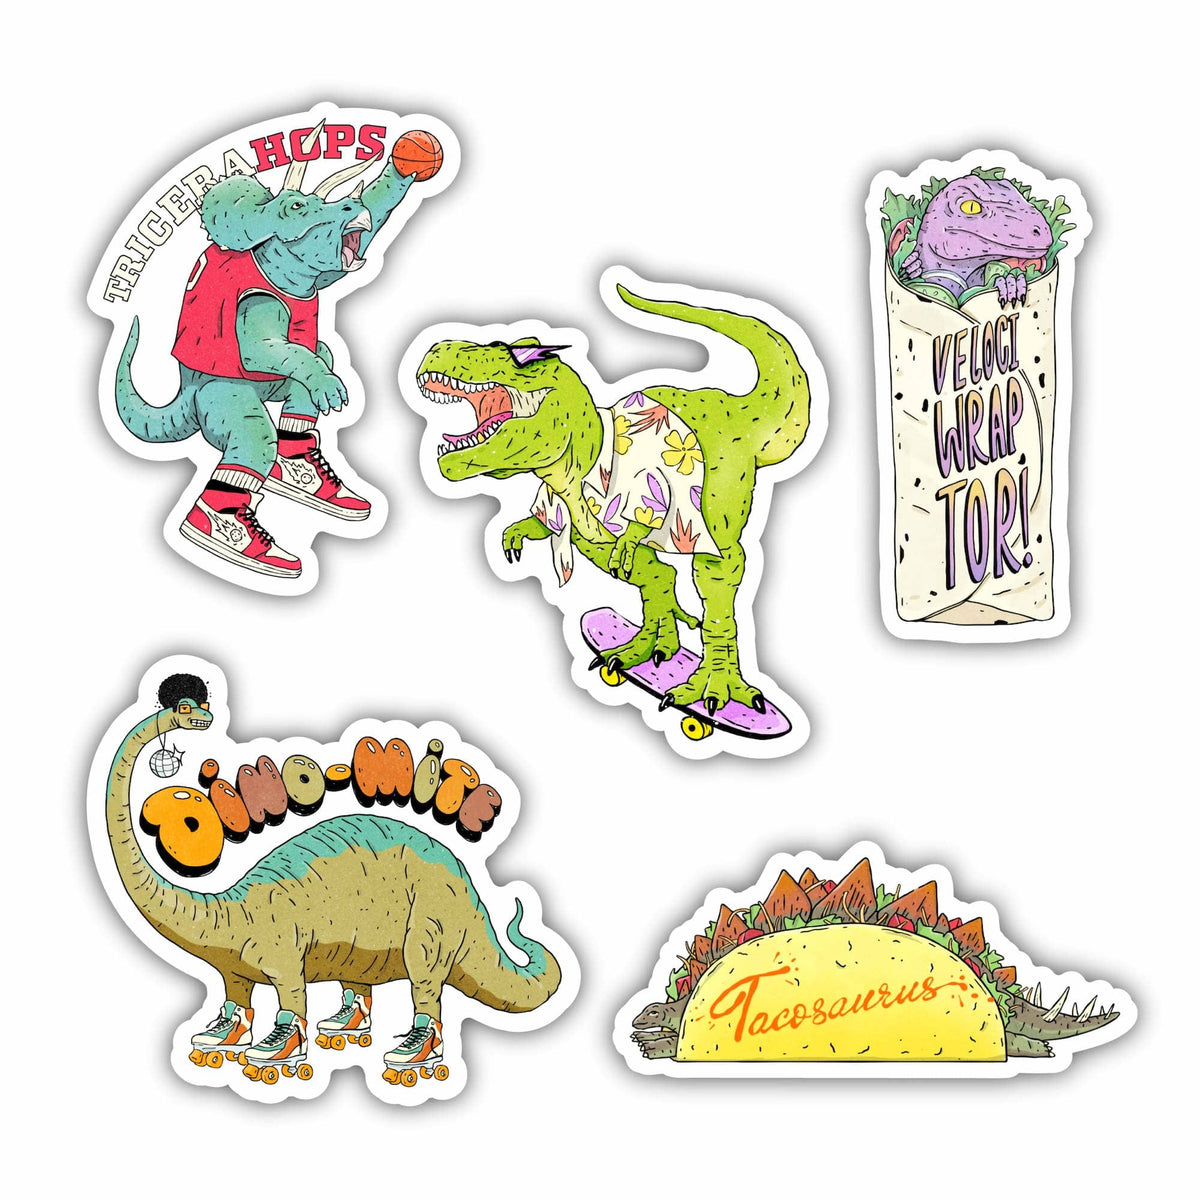 Sticko Dinosaur Sticker Pack